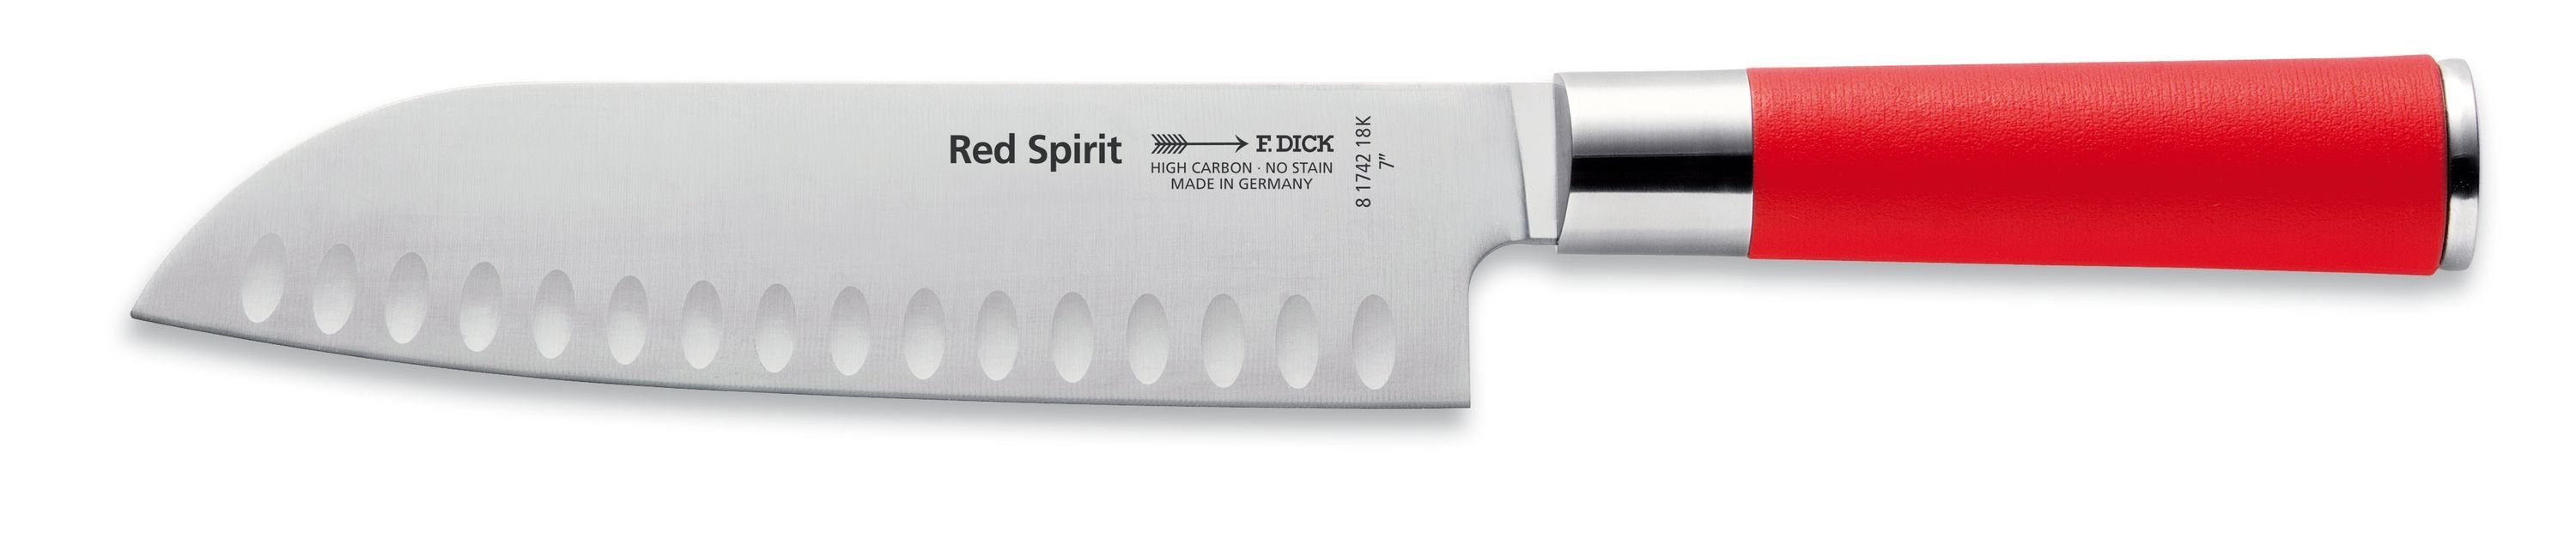 Dick Santokumesser Red Spirit, Santoku-Messer Red Spirit 18 cm Profi  Allzweck-Küchenmesser mit Kullenschliff Rostfreier Edelstahl 56° HRC